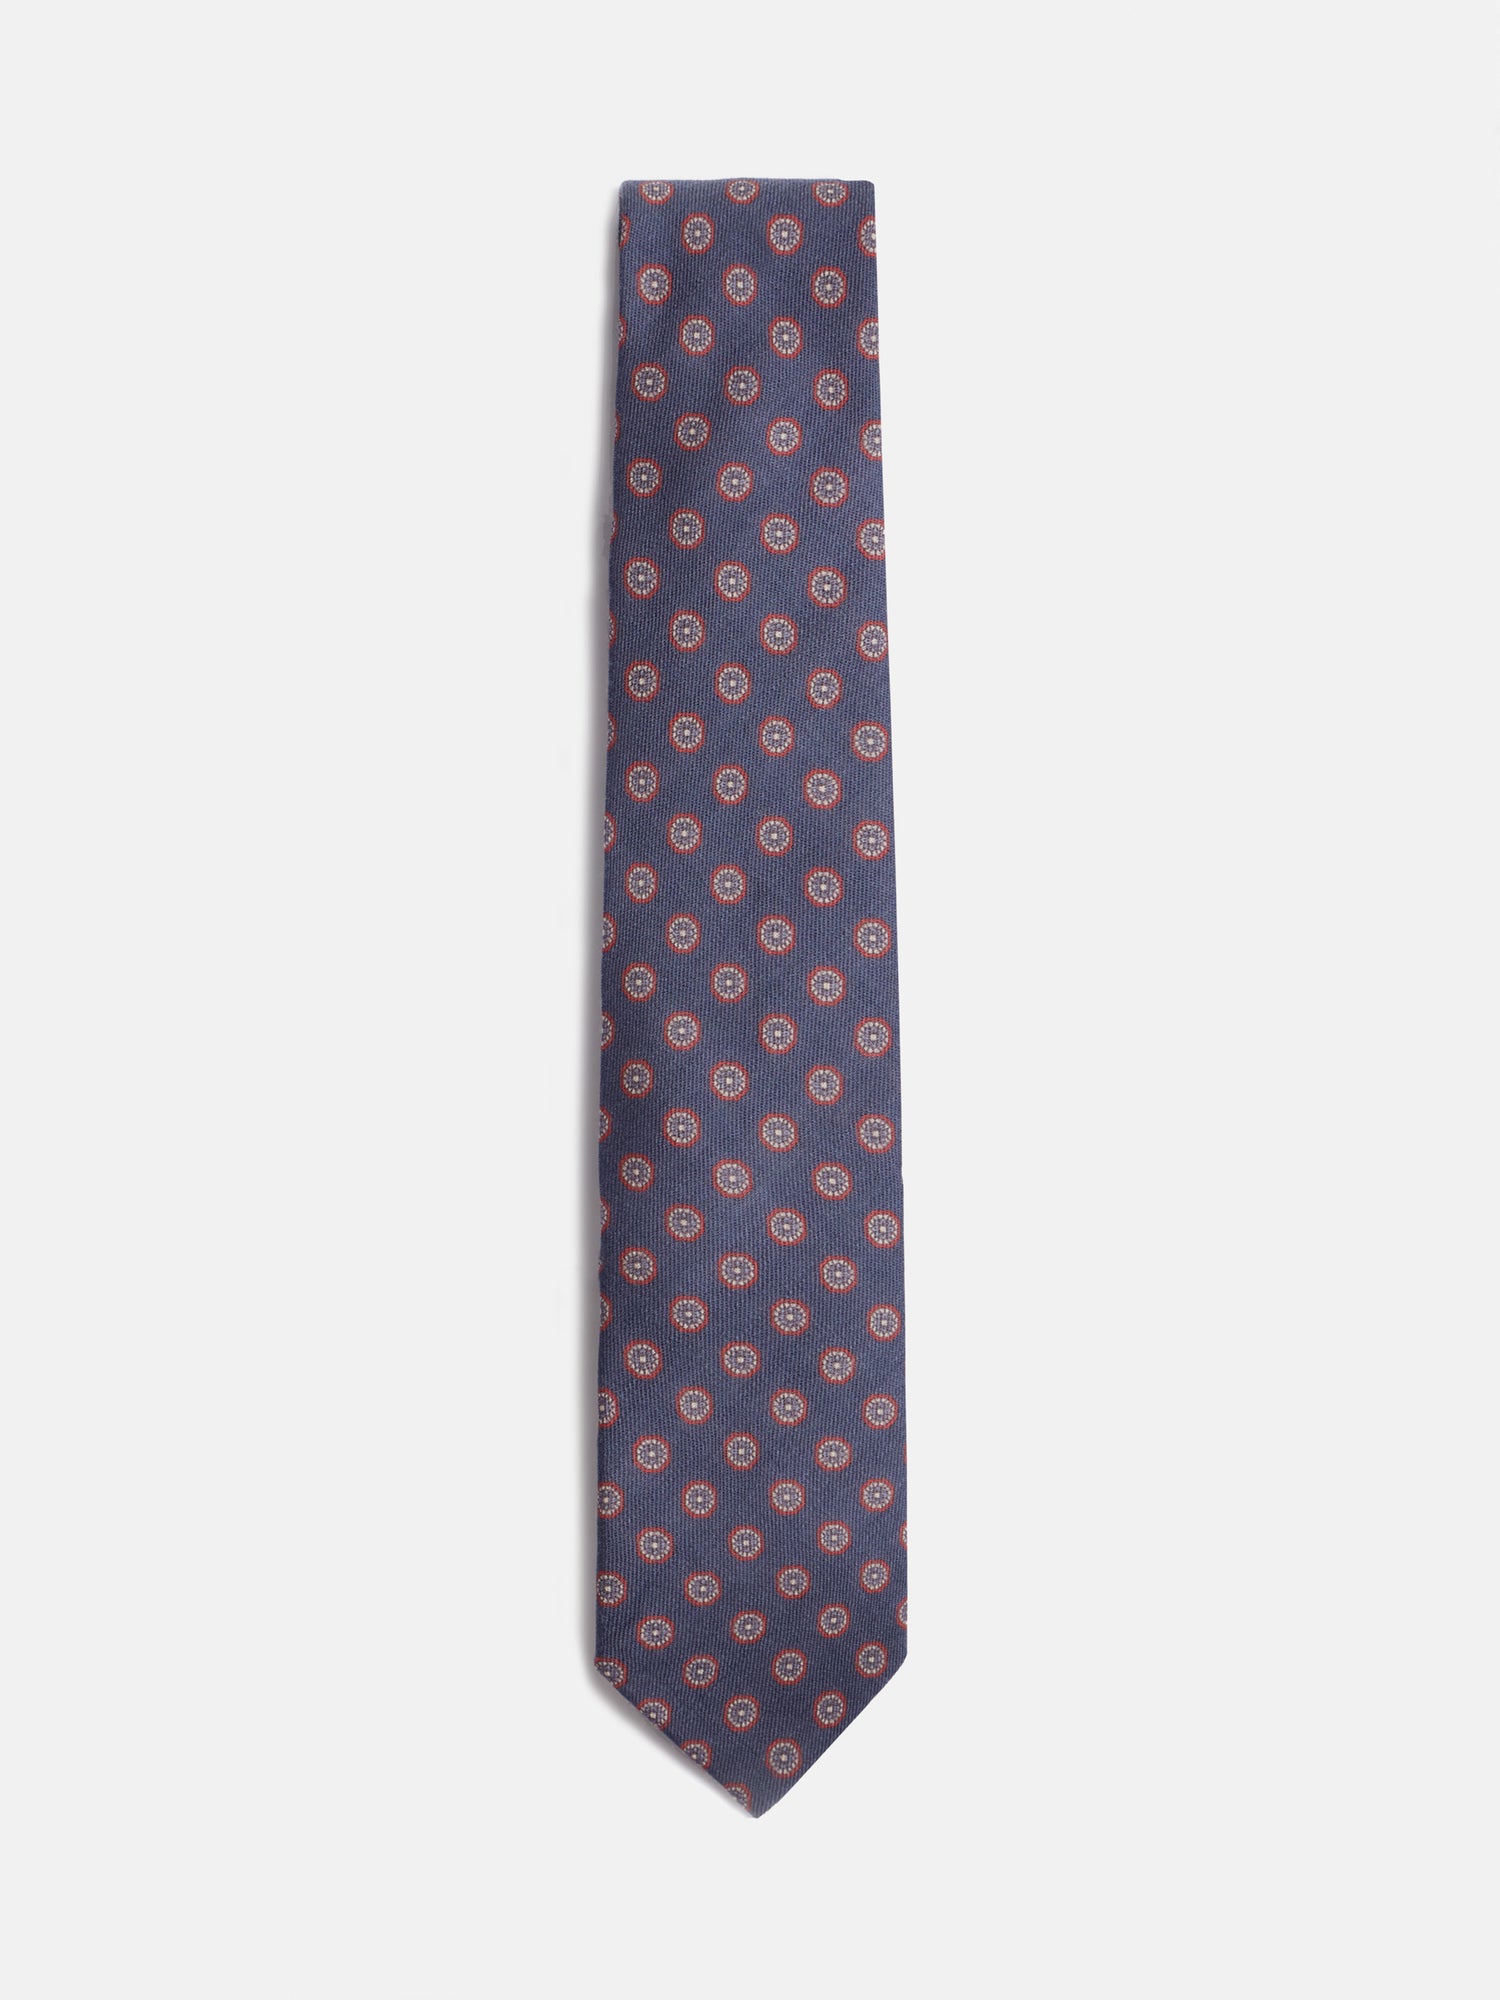 Cravate géométrique imprimée bleu marine